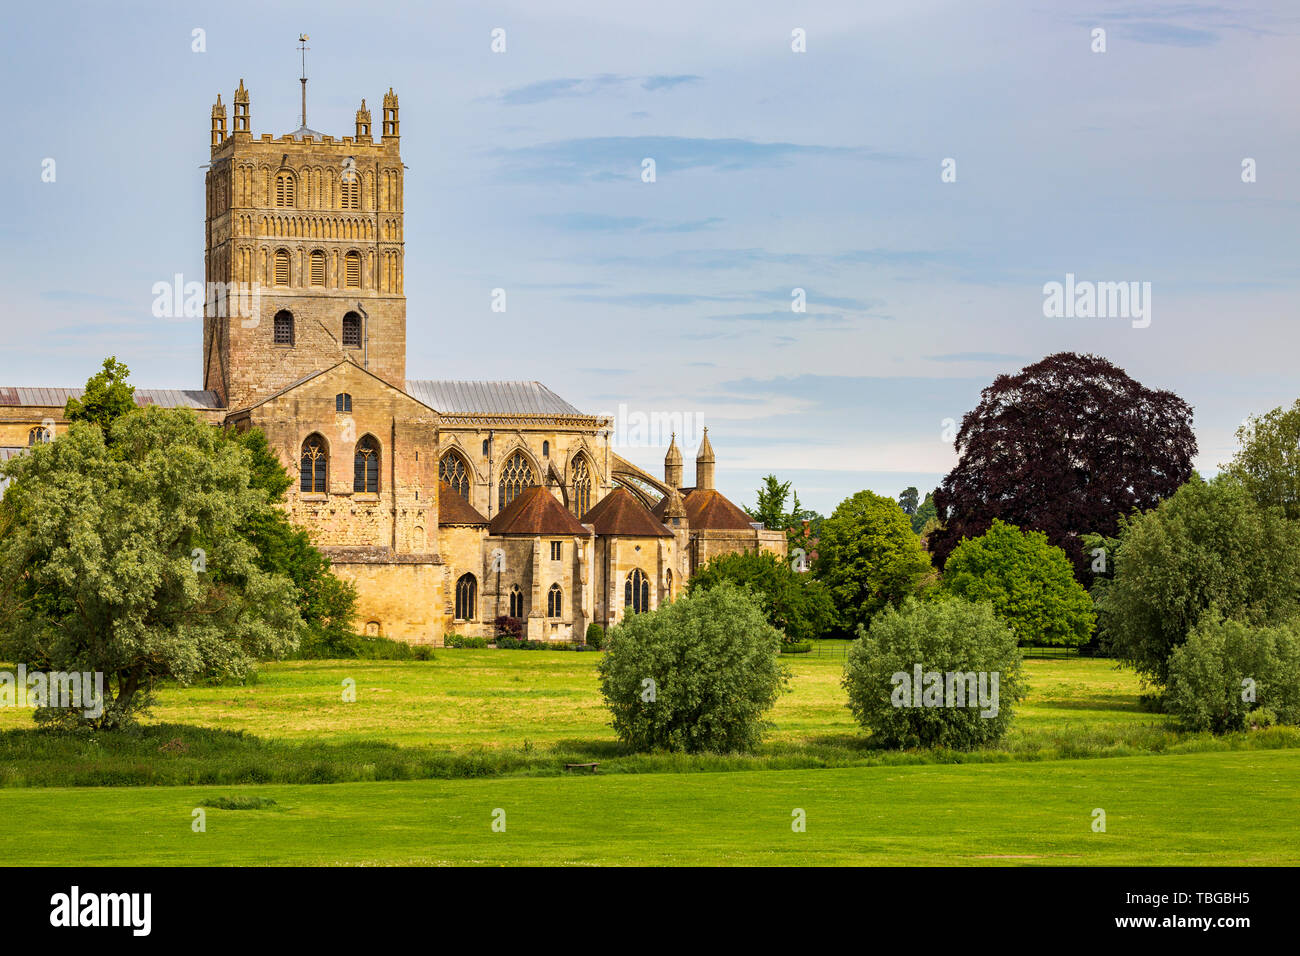 Der Glockenturm und Chor von Tewkesbury Abbey Church in Gloucestershire, England Stockfoto